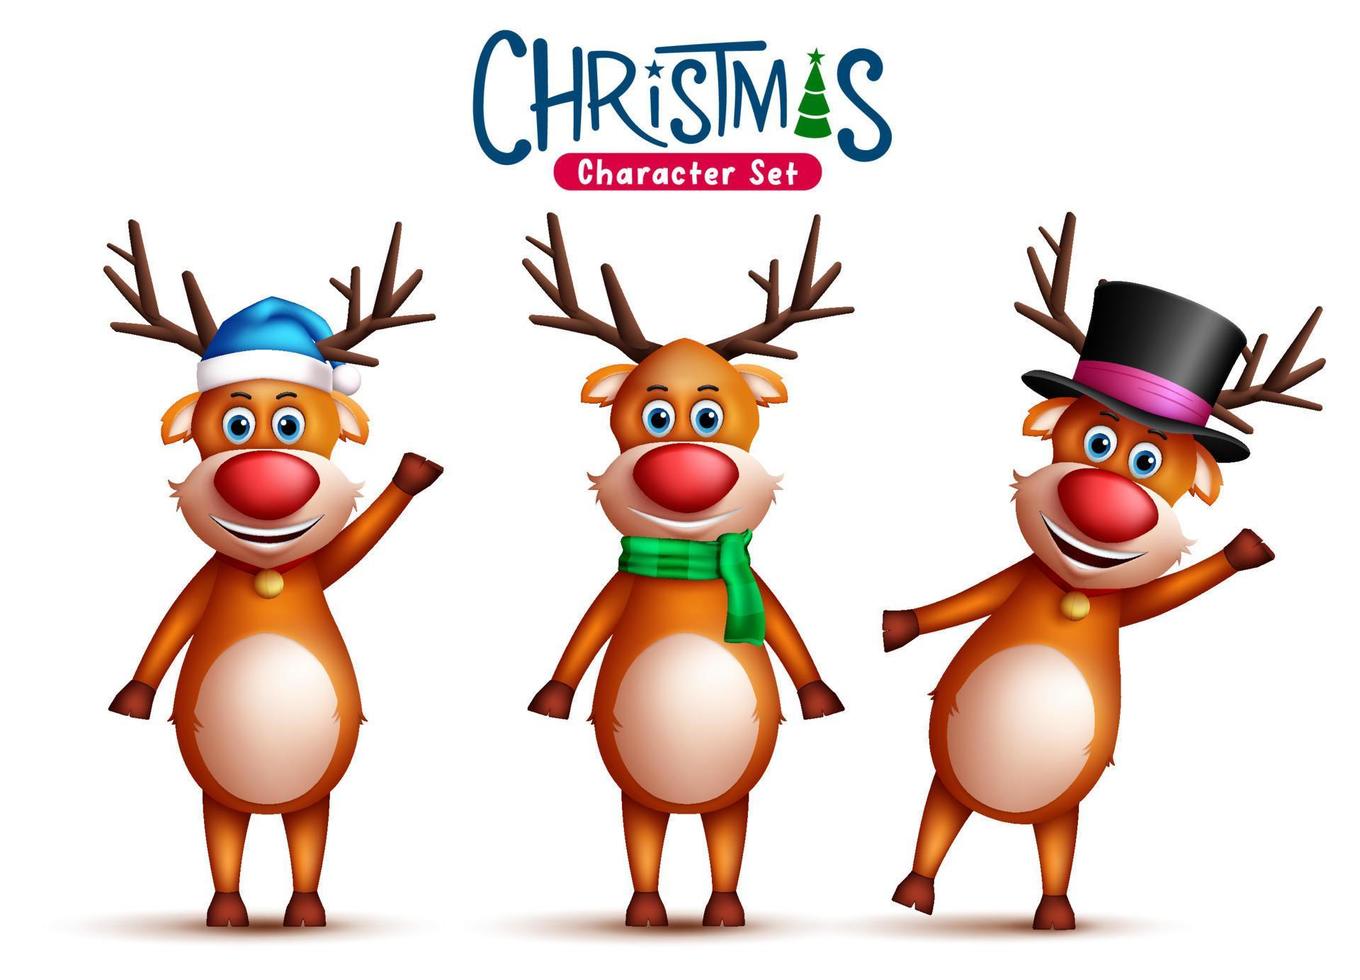 Rentierweihnachtszeichenvektorsatz. 3D Santa's Rentierfiguren in süßen und fröhlichen Gesichtsausdrücken mit Hut und Schal für das Design der Weihnachtskollektion. Vektor-Illustration vektor